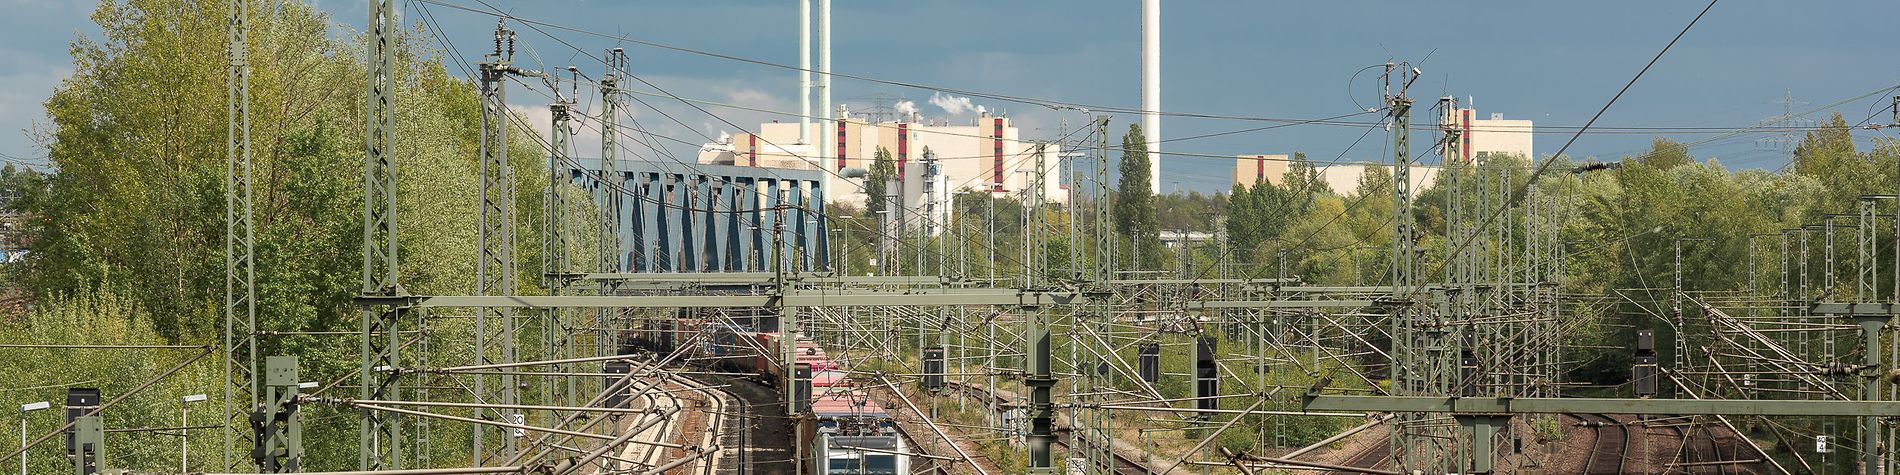 Gleisanlage mit einem Güterzug und der Müllverwertung Borsigstraße im Hintergrund.